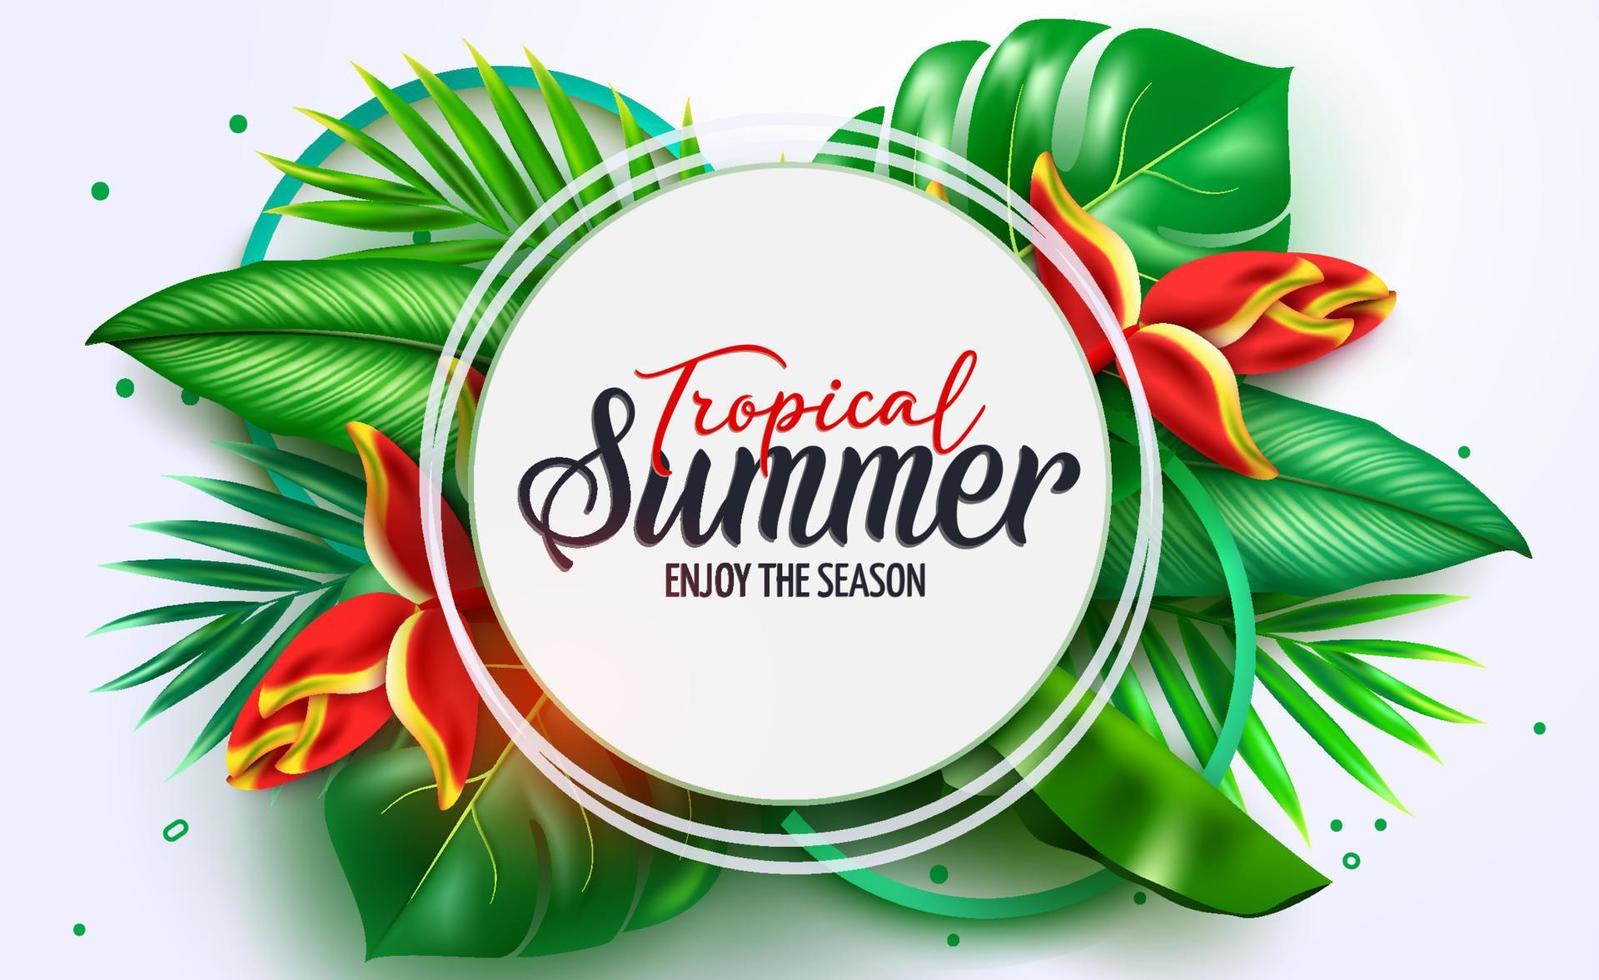 Sommer-Vektor-Template-Design. tropischer sommertext im weißen kreisraum mit pflanzenblättern von monstera, heliconia und palme für feiertagsgrüße. Vektor-Illustration. vektor